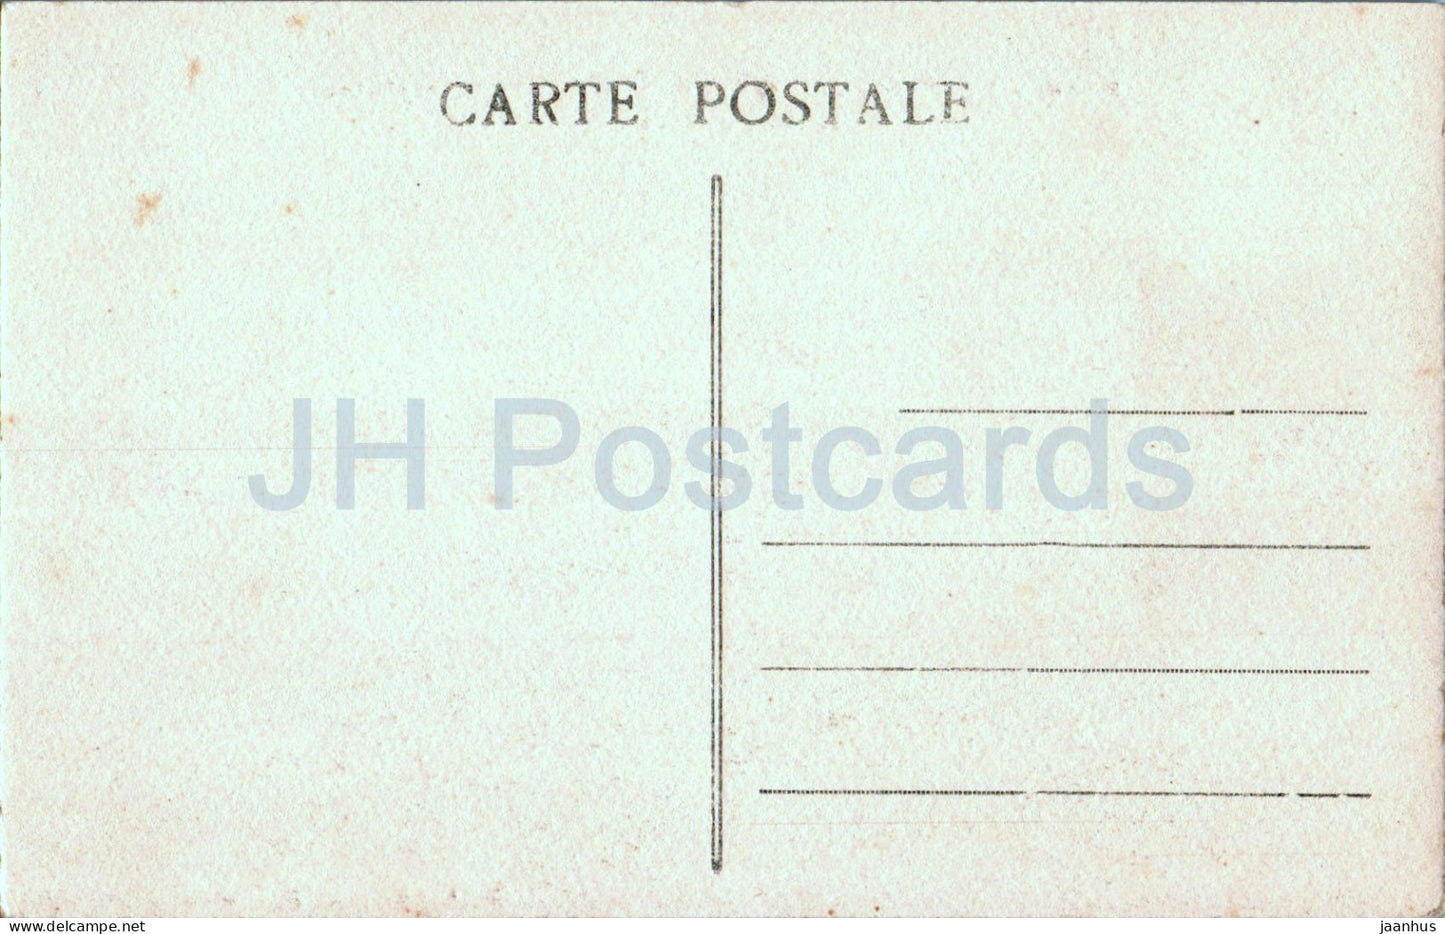 Le Phare et l'Abbaye de la Pointe St Mathieu Env de Brest - Leuchtturm - 8388 - alte Postkarte - Frankreich - unbenutzt 